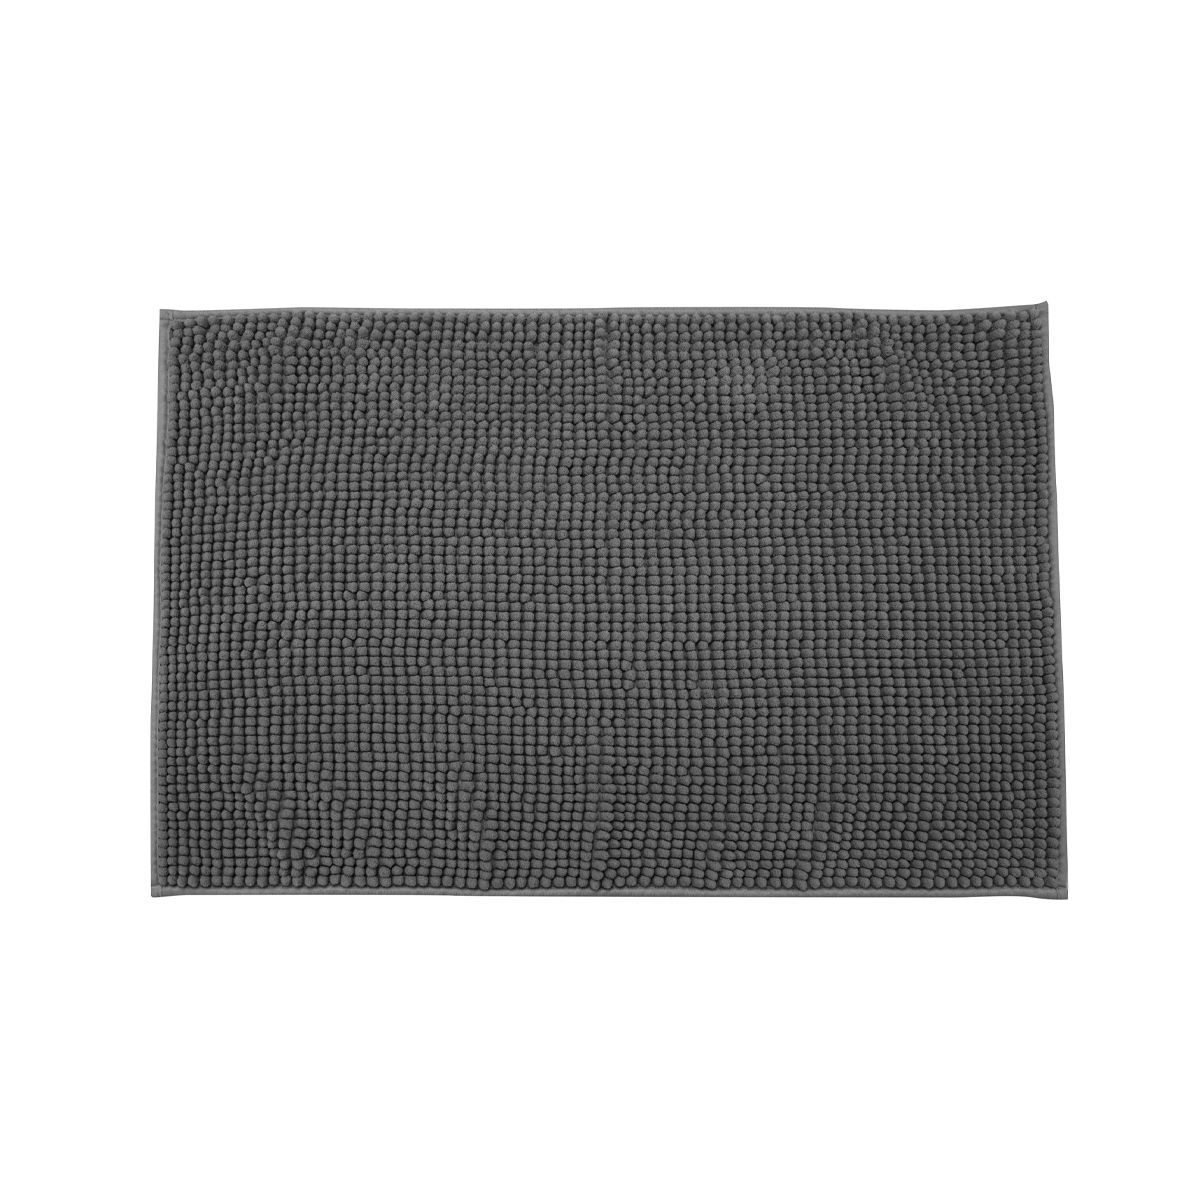 Ταπέτο Μπάνιου Polyester Beads Ανθρακί Estia 80x50x1εκ. 02-20699 (Ύφασμα: Polyester, Χρώμα: Ανθρακί) – estia – 02-20699